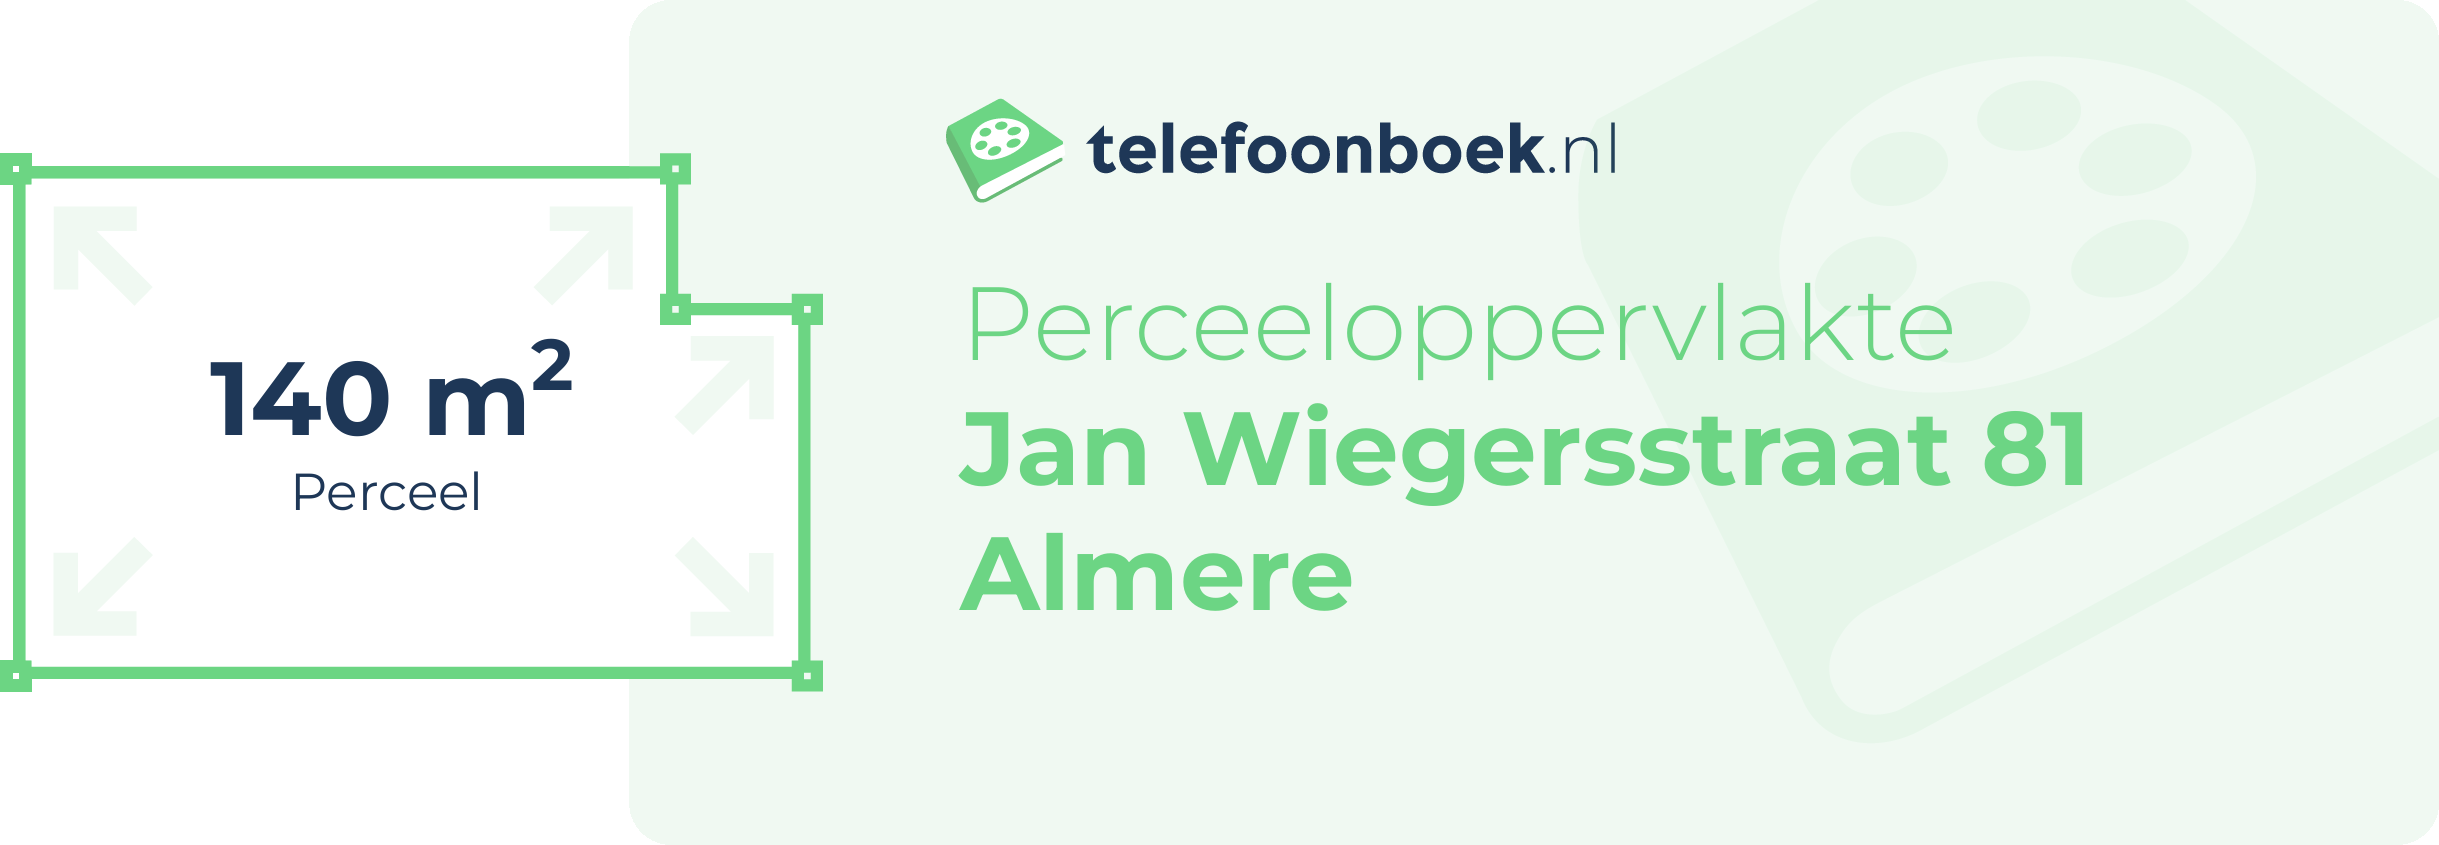 Perceeloppervlakte Jan Wiegersstraat 81 Almere